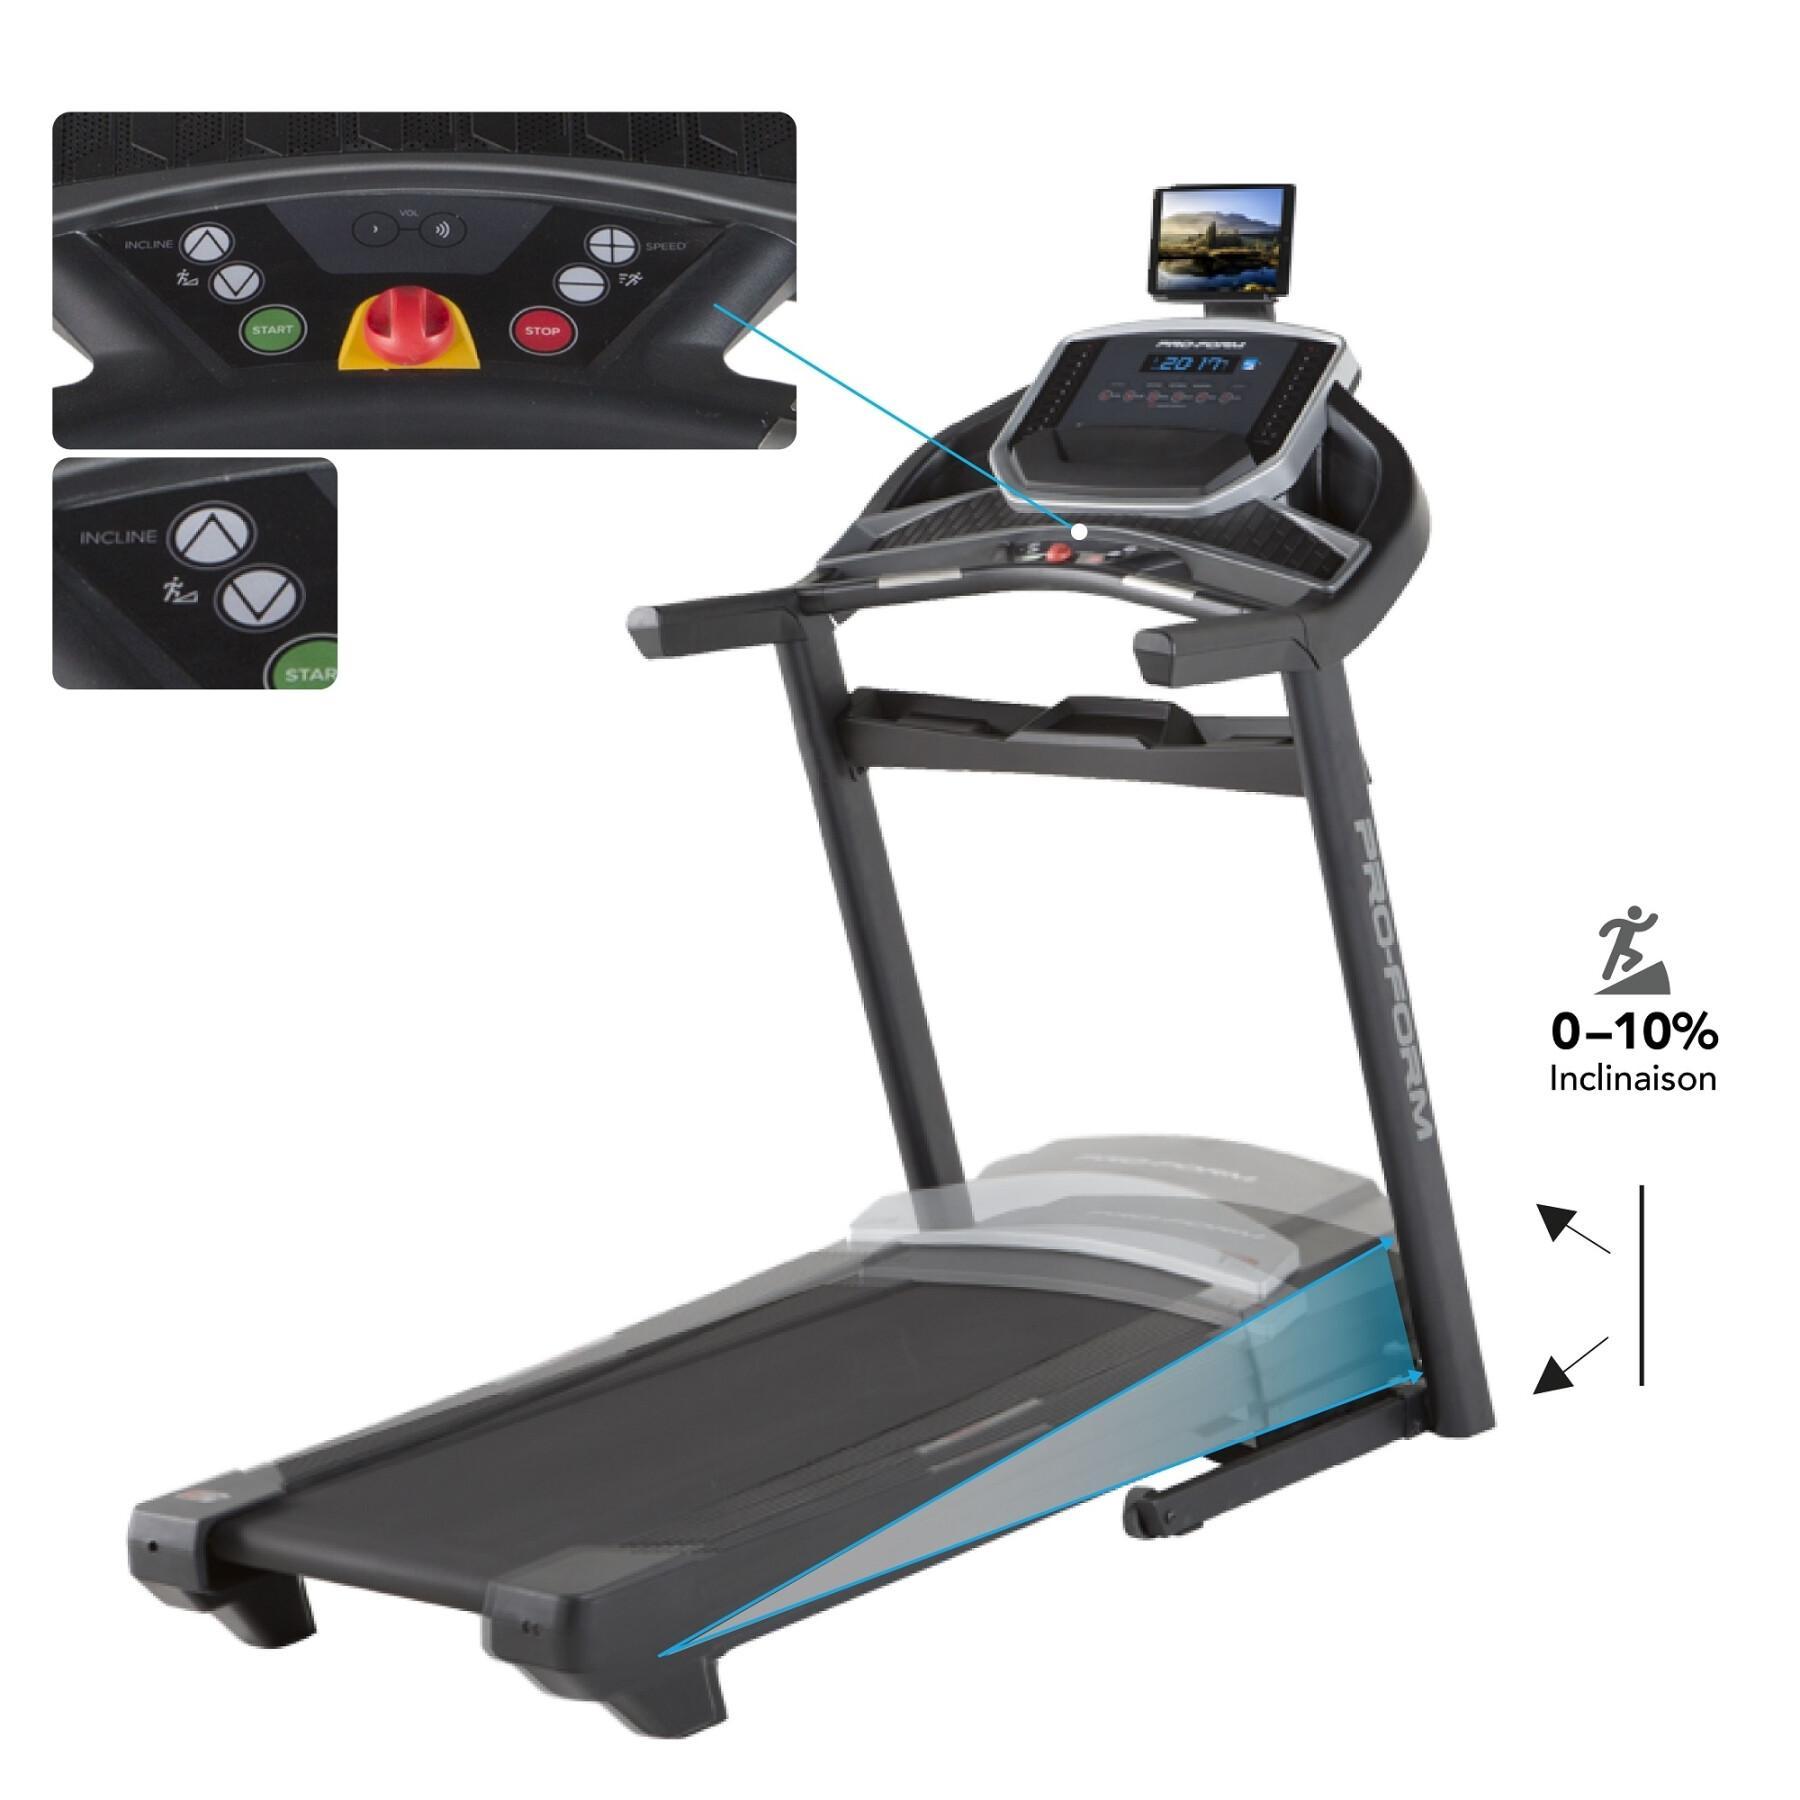 Treadmill ProForm Power 575i